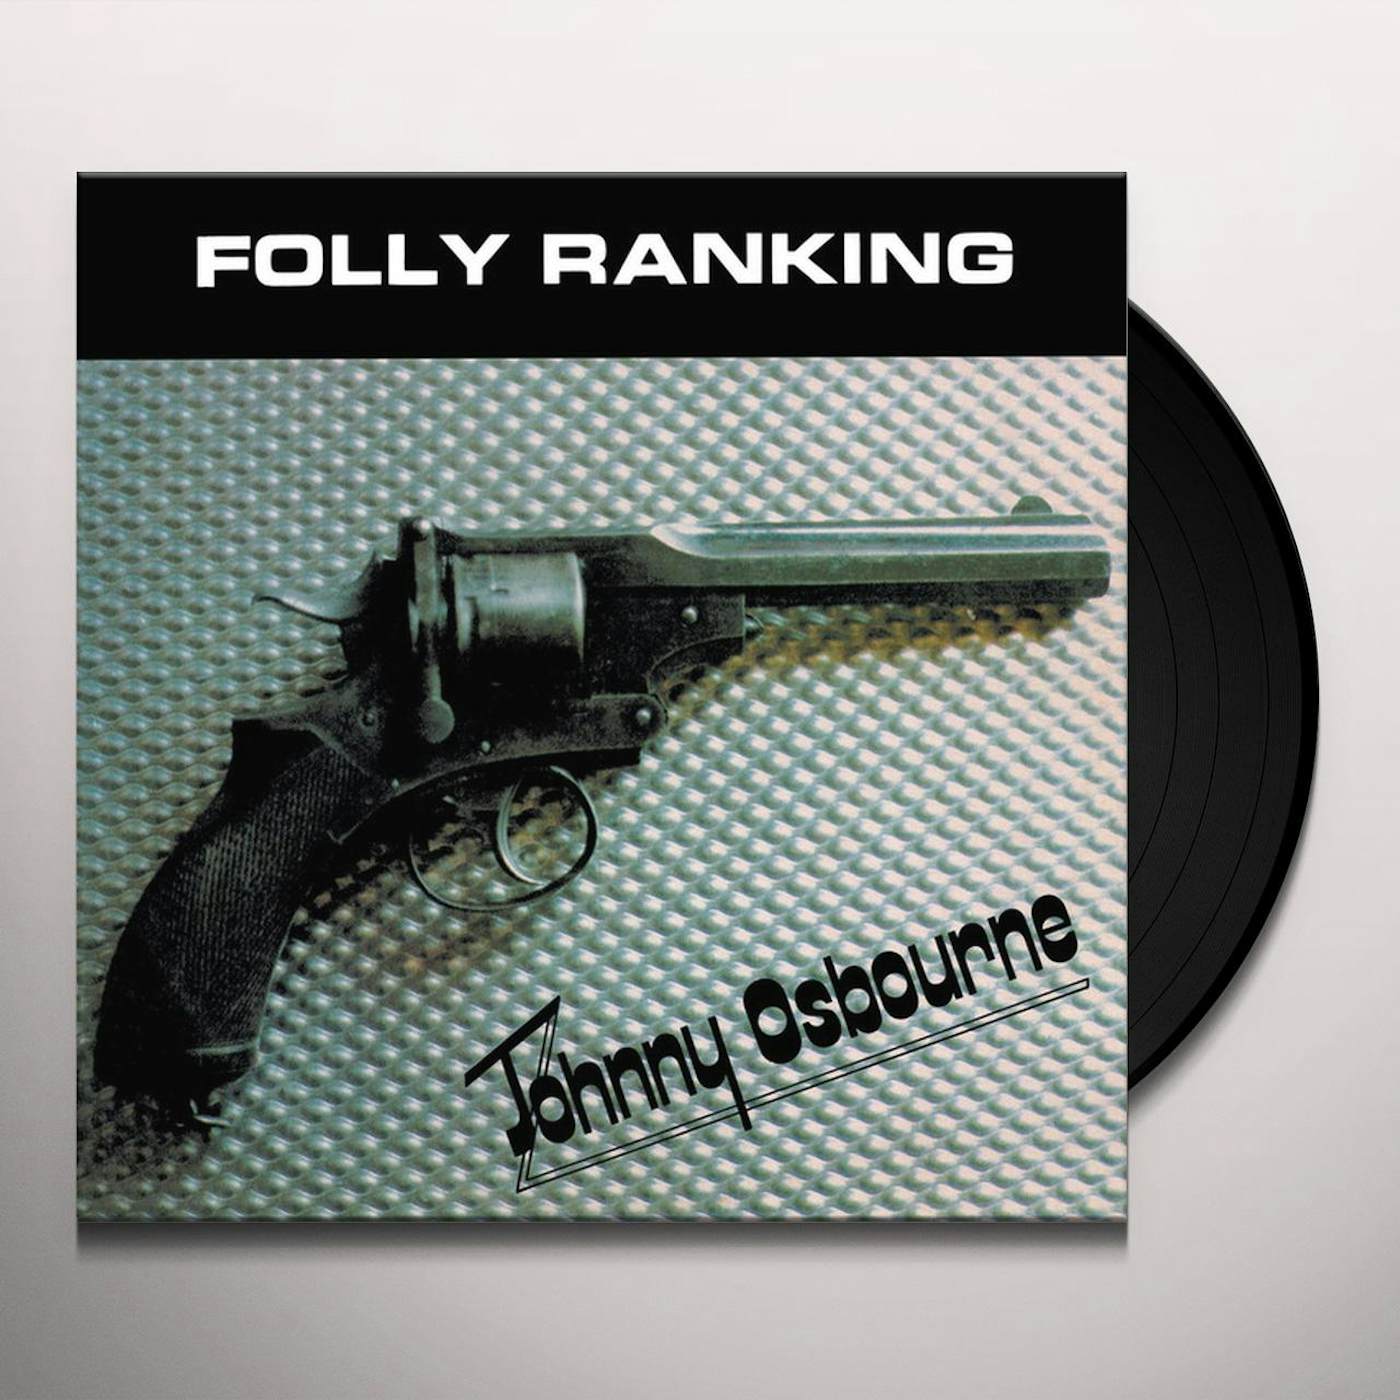 Johnny Osbourne FALLY RANKING Vinyl Record